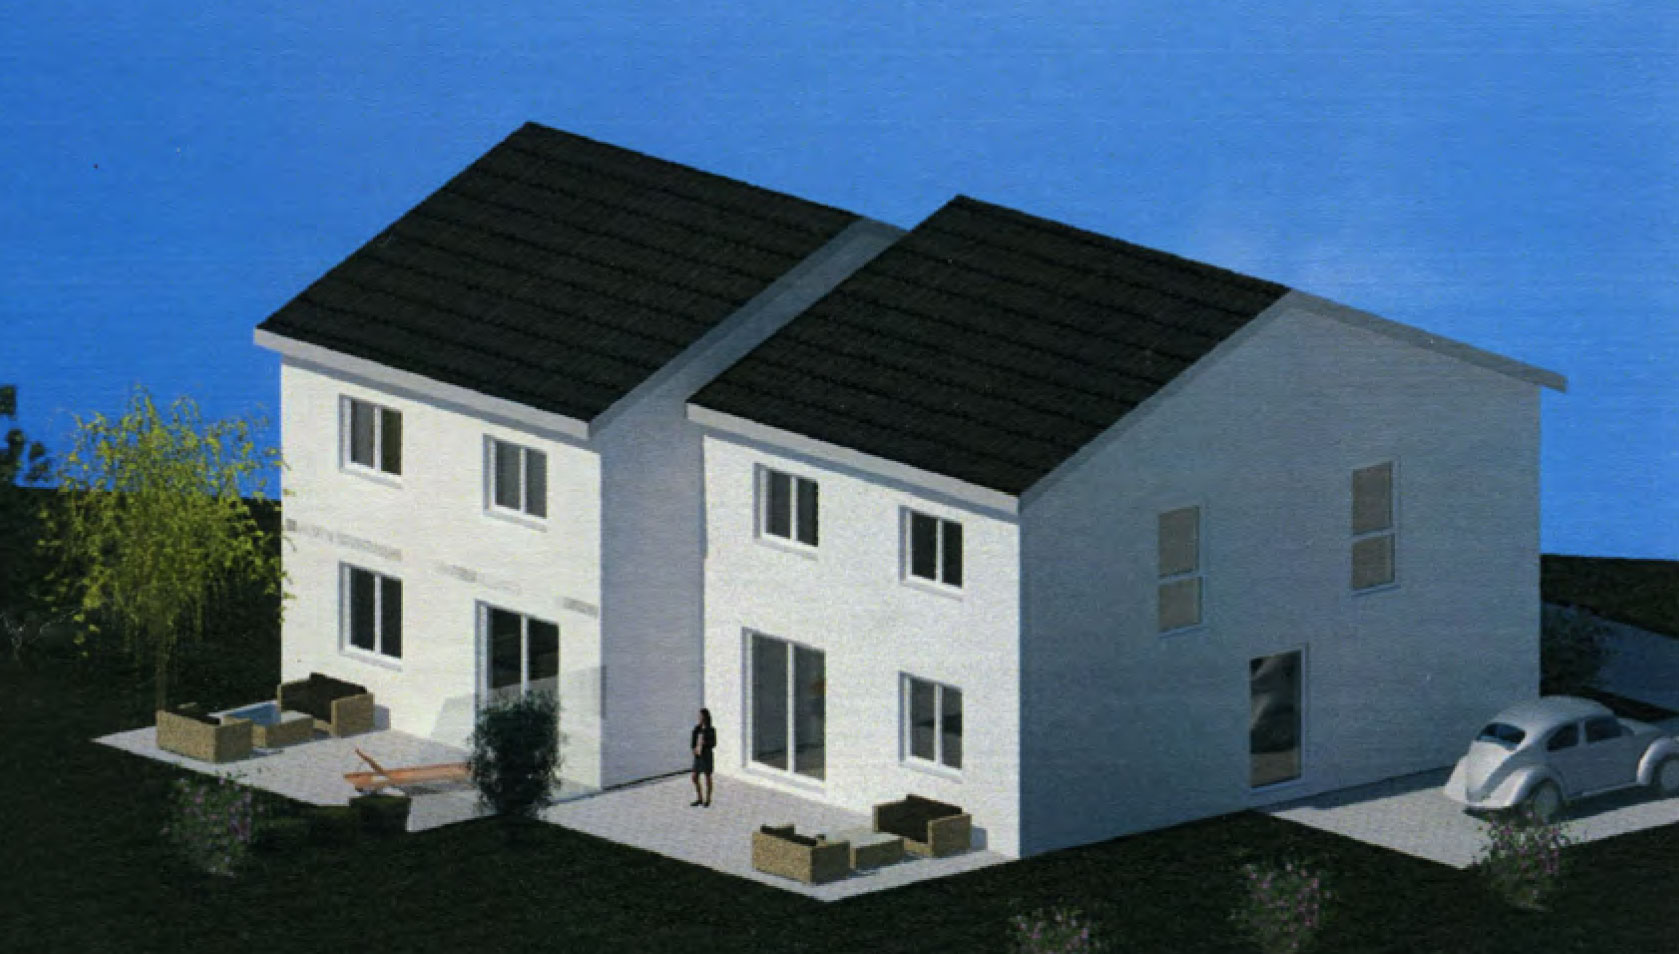 Kaufangebot für eine Doppelhaus CAD Zeichnung